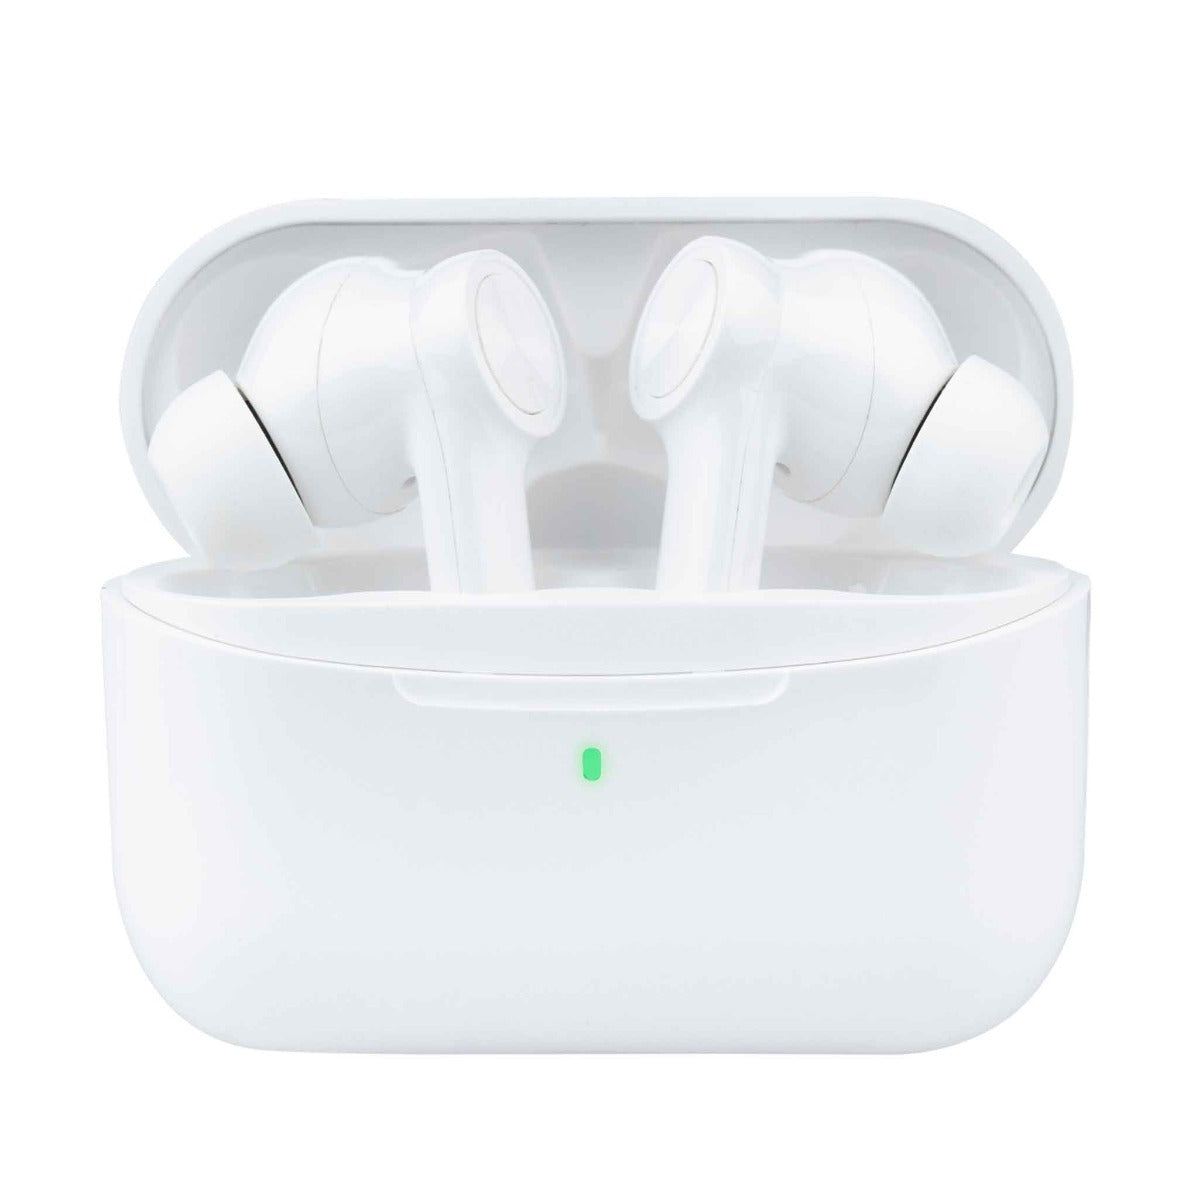 Kuurapods PRO V2 Blancos - auténticos auriculares inalámbricos con cancelación activa del ruido